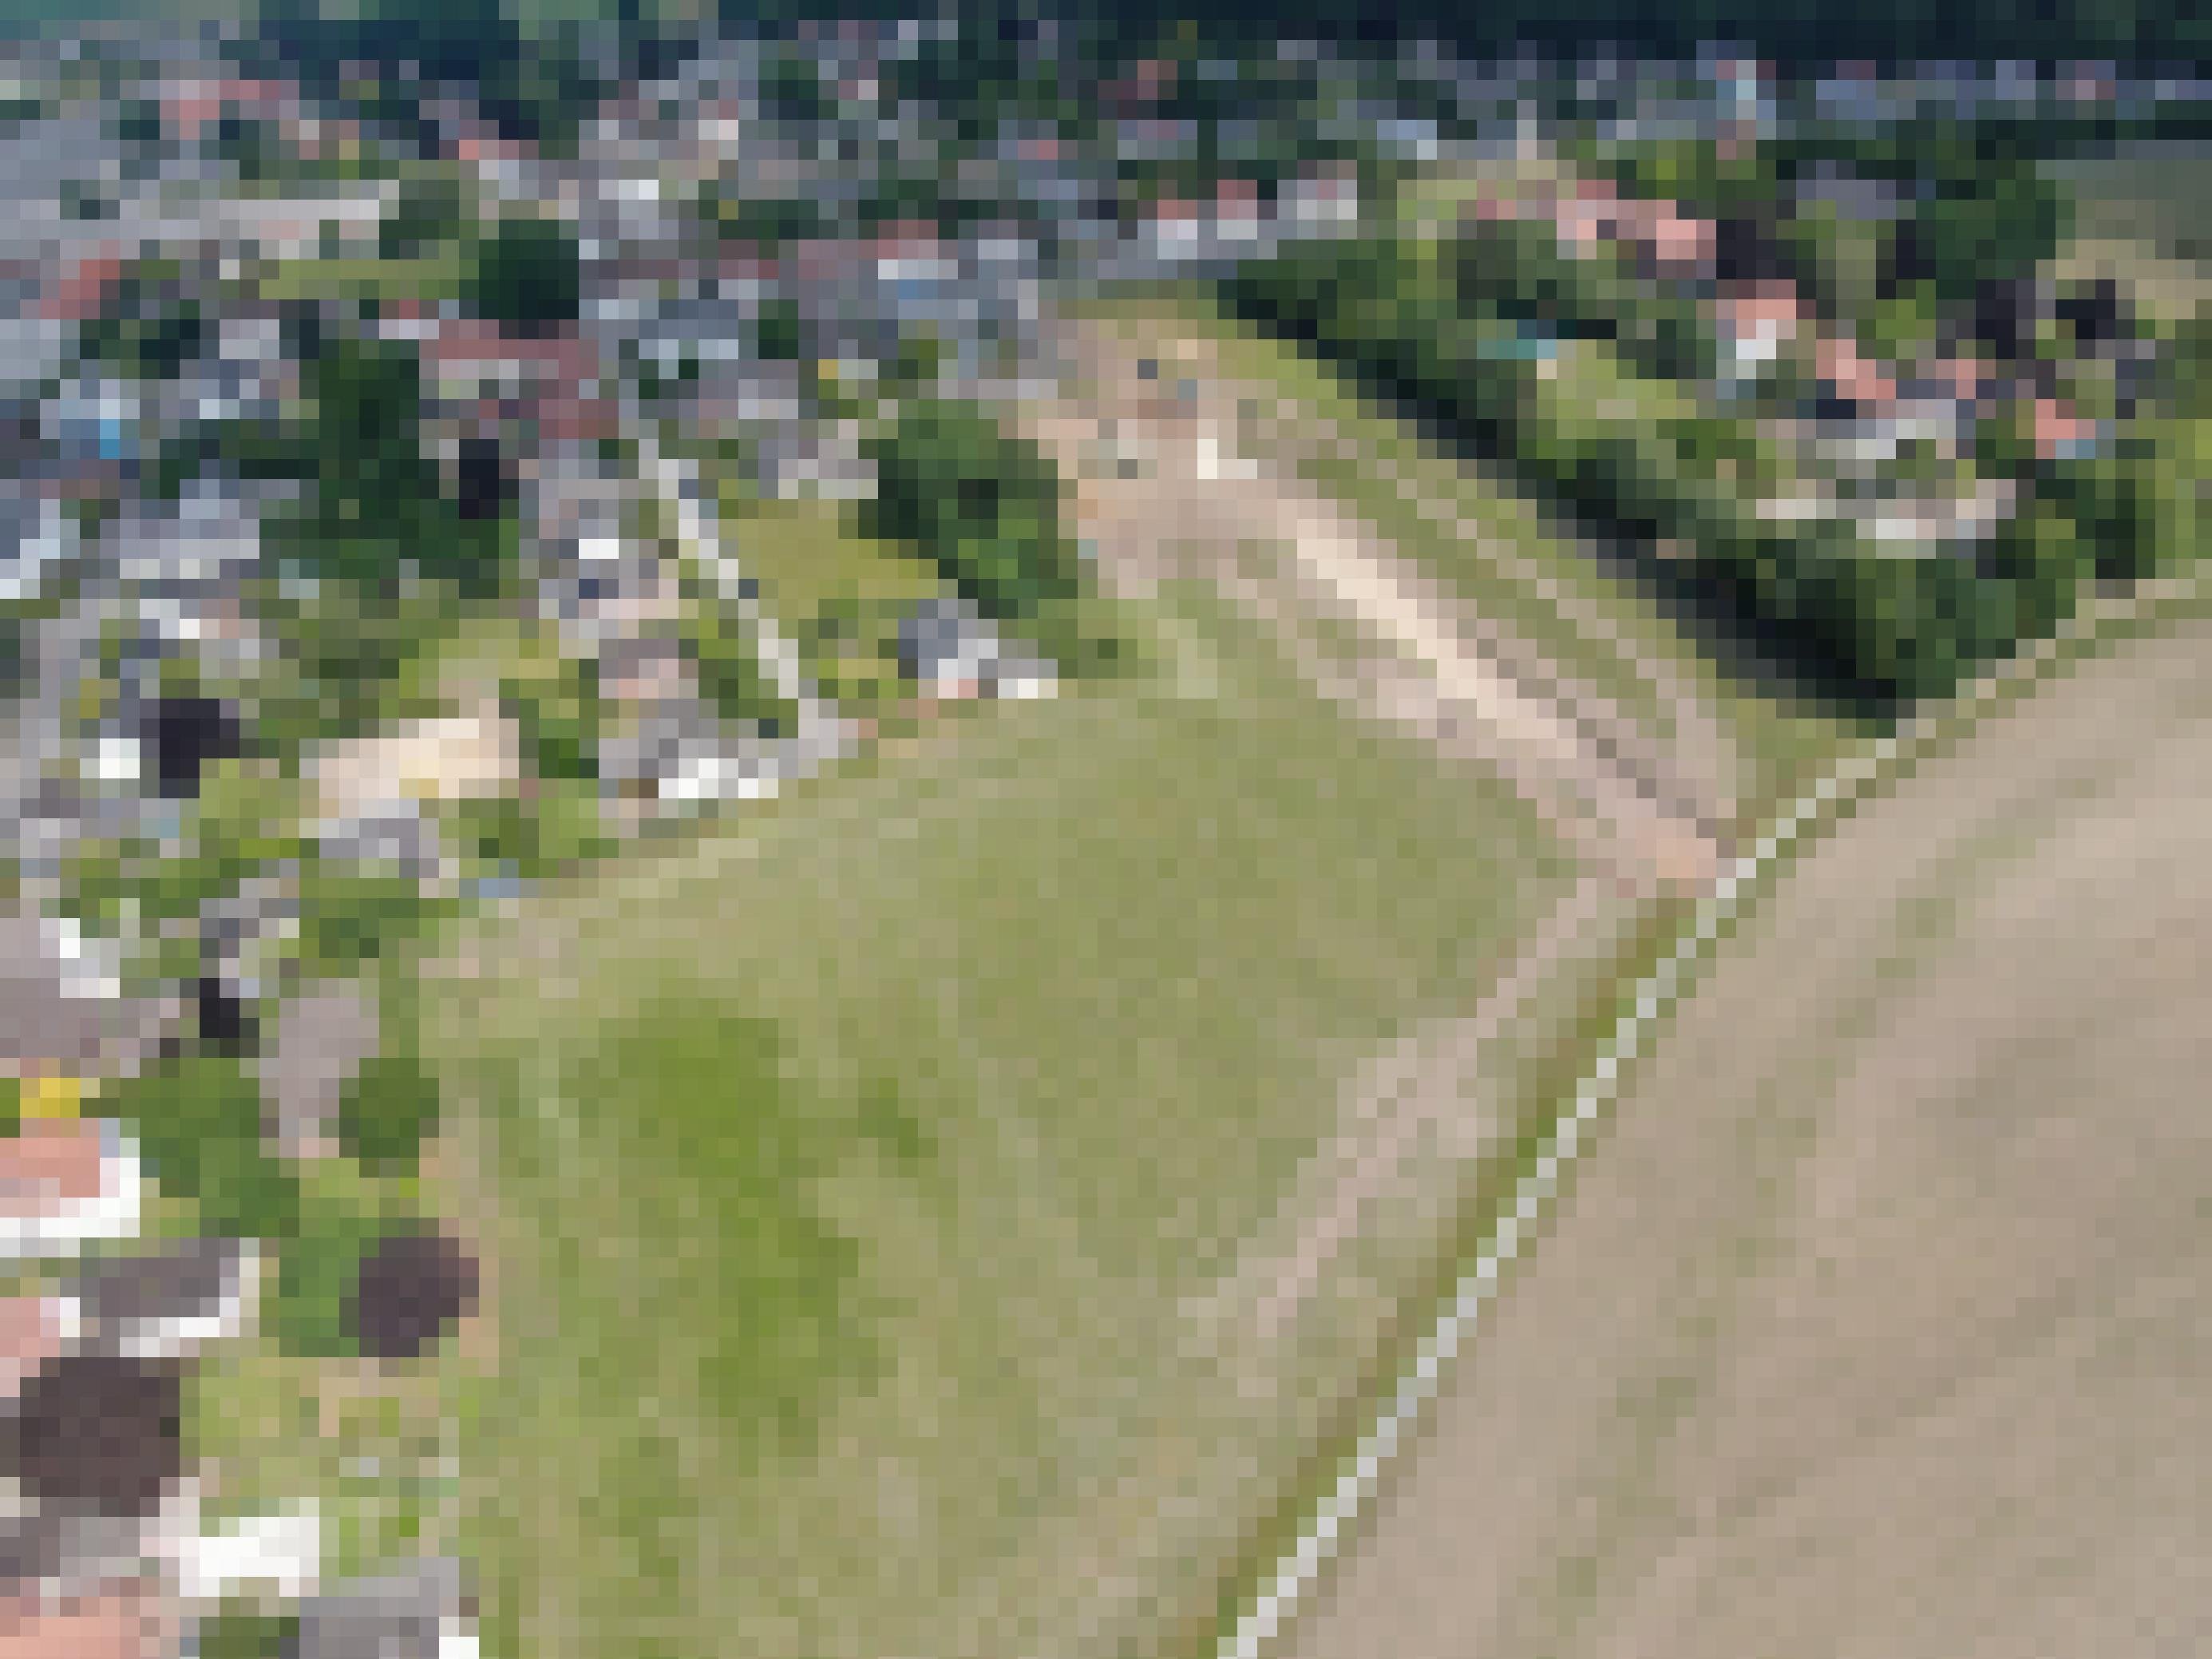 Luftbild eines Wohngebiets mit angrenzendem Feld